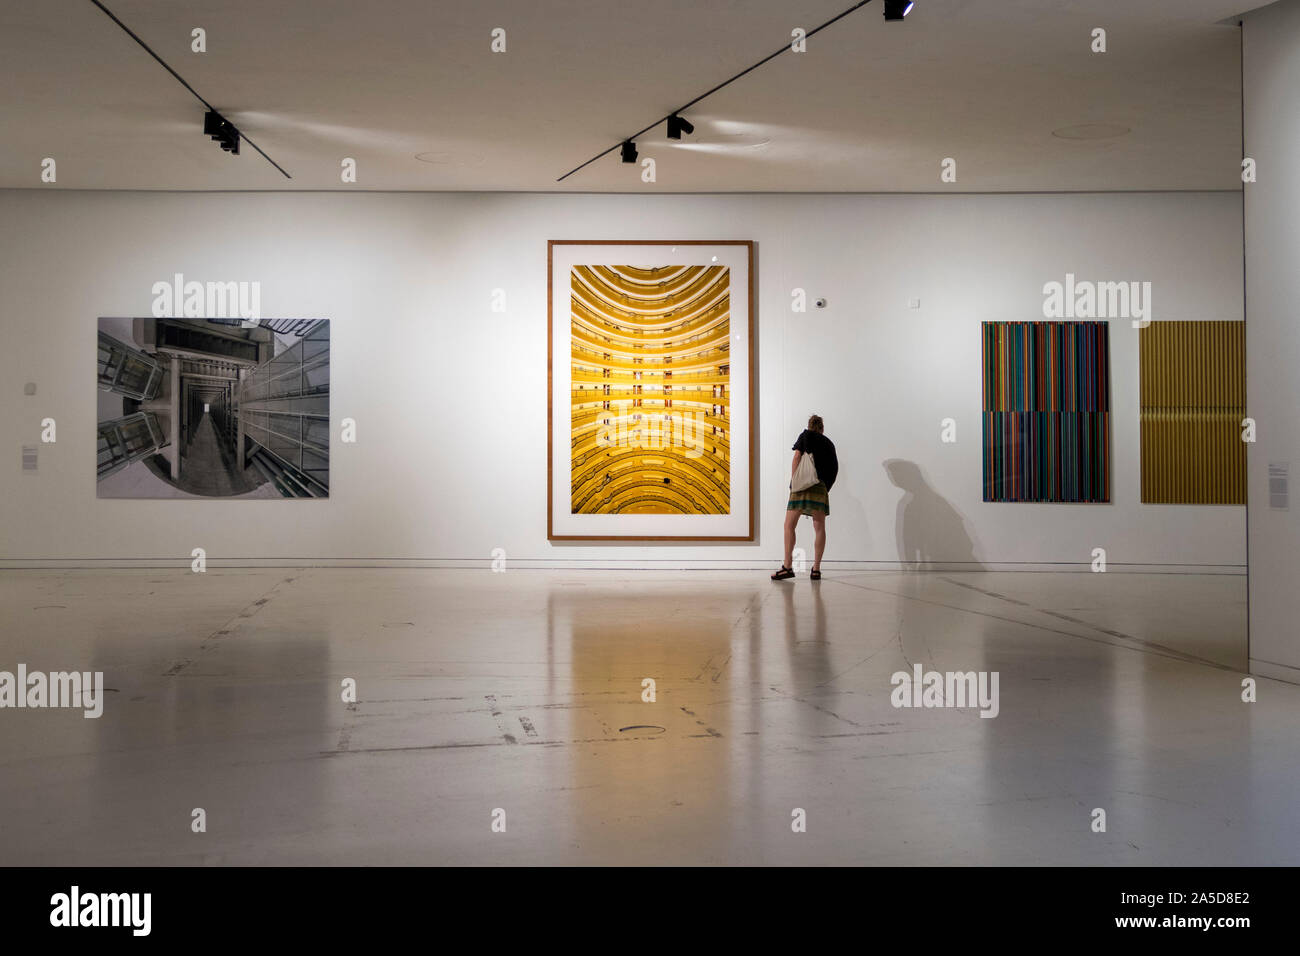 Personne admirant un Andreas Gursky photographie au MAAT Musée d'art et de la technologie de l'Architecture à Lisbonne, Portugal Banque D'Images